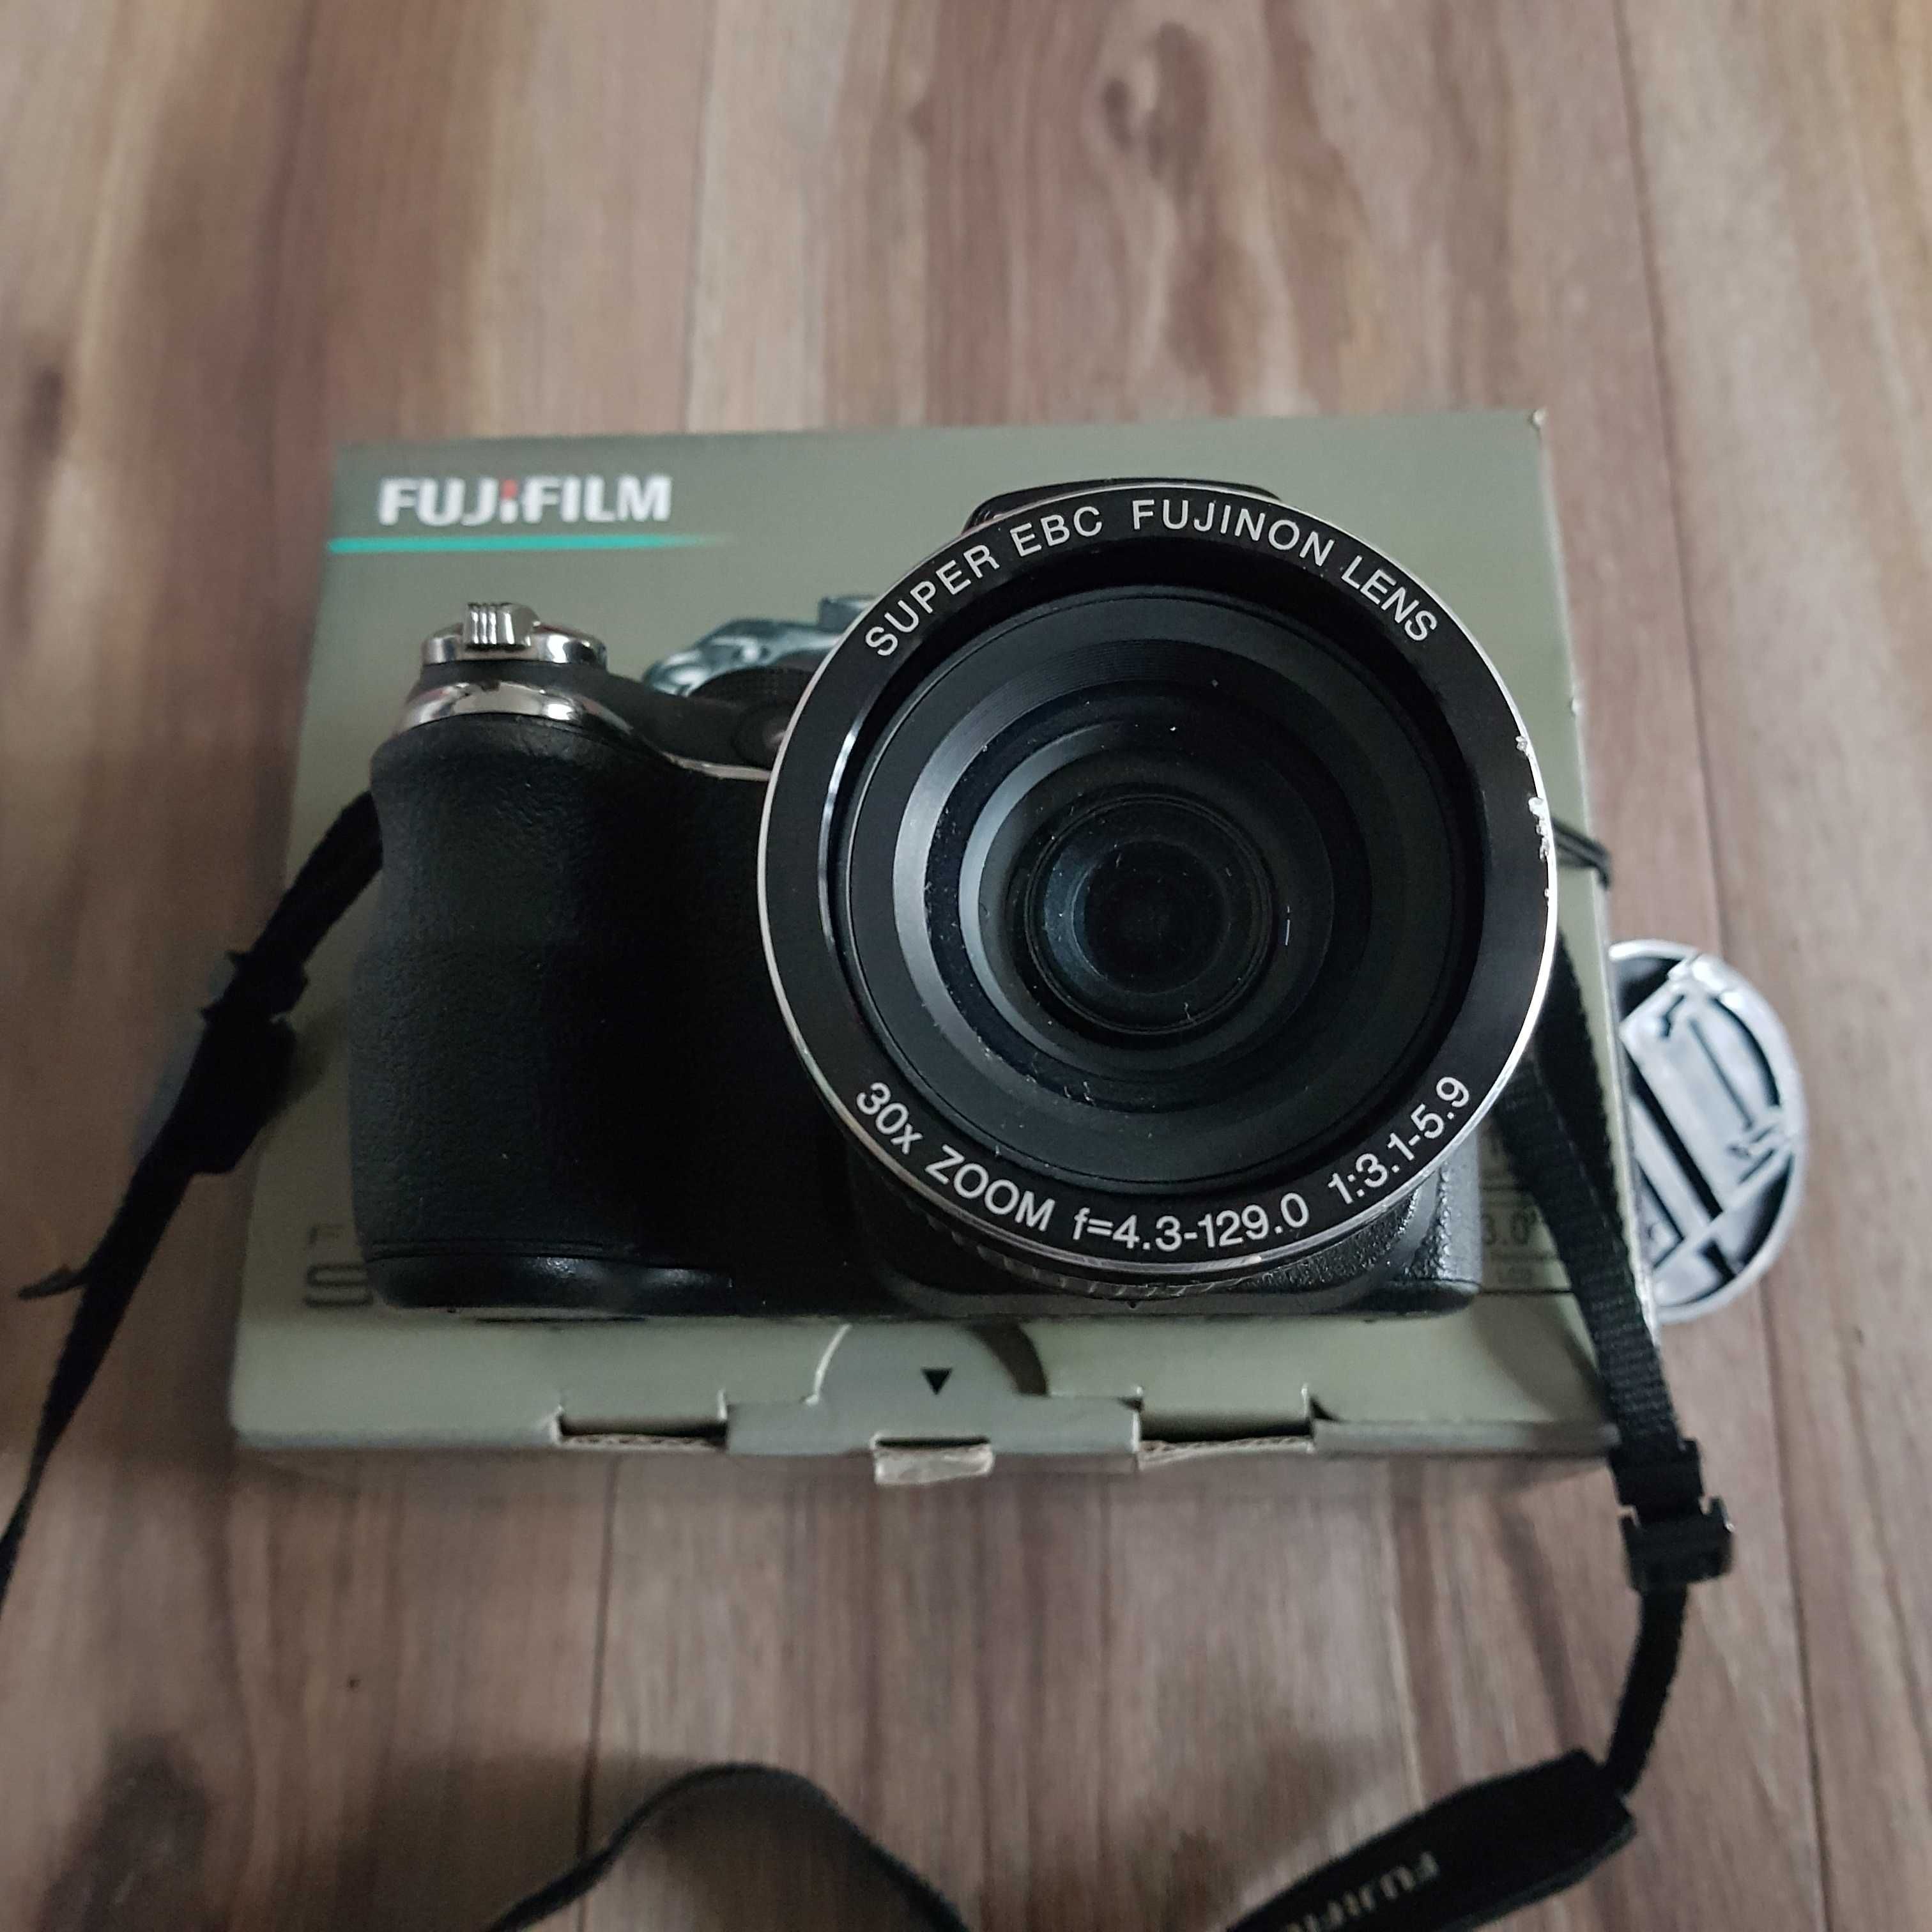 Fujifilm Finepix S4000